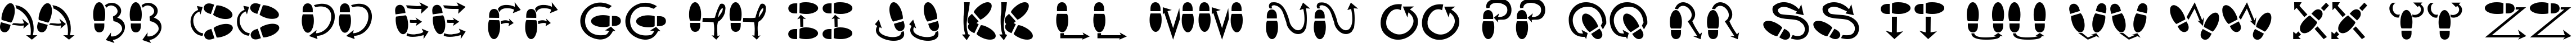 Пример написания английского алфавита шрифтом DanceStep